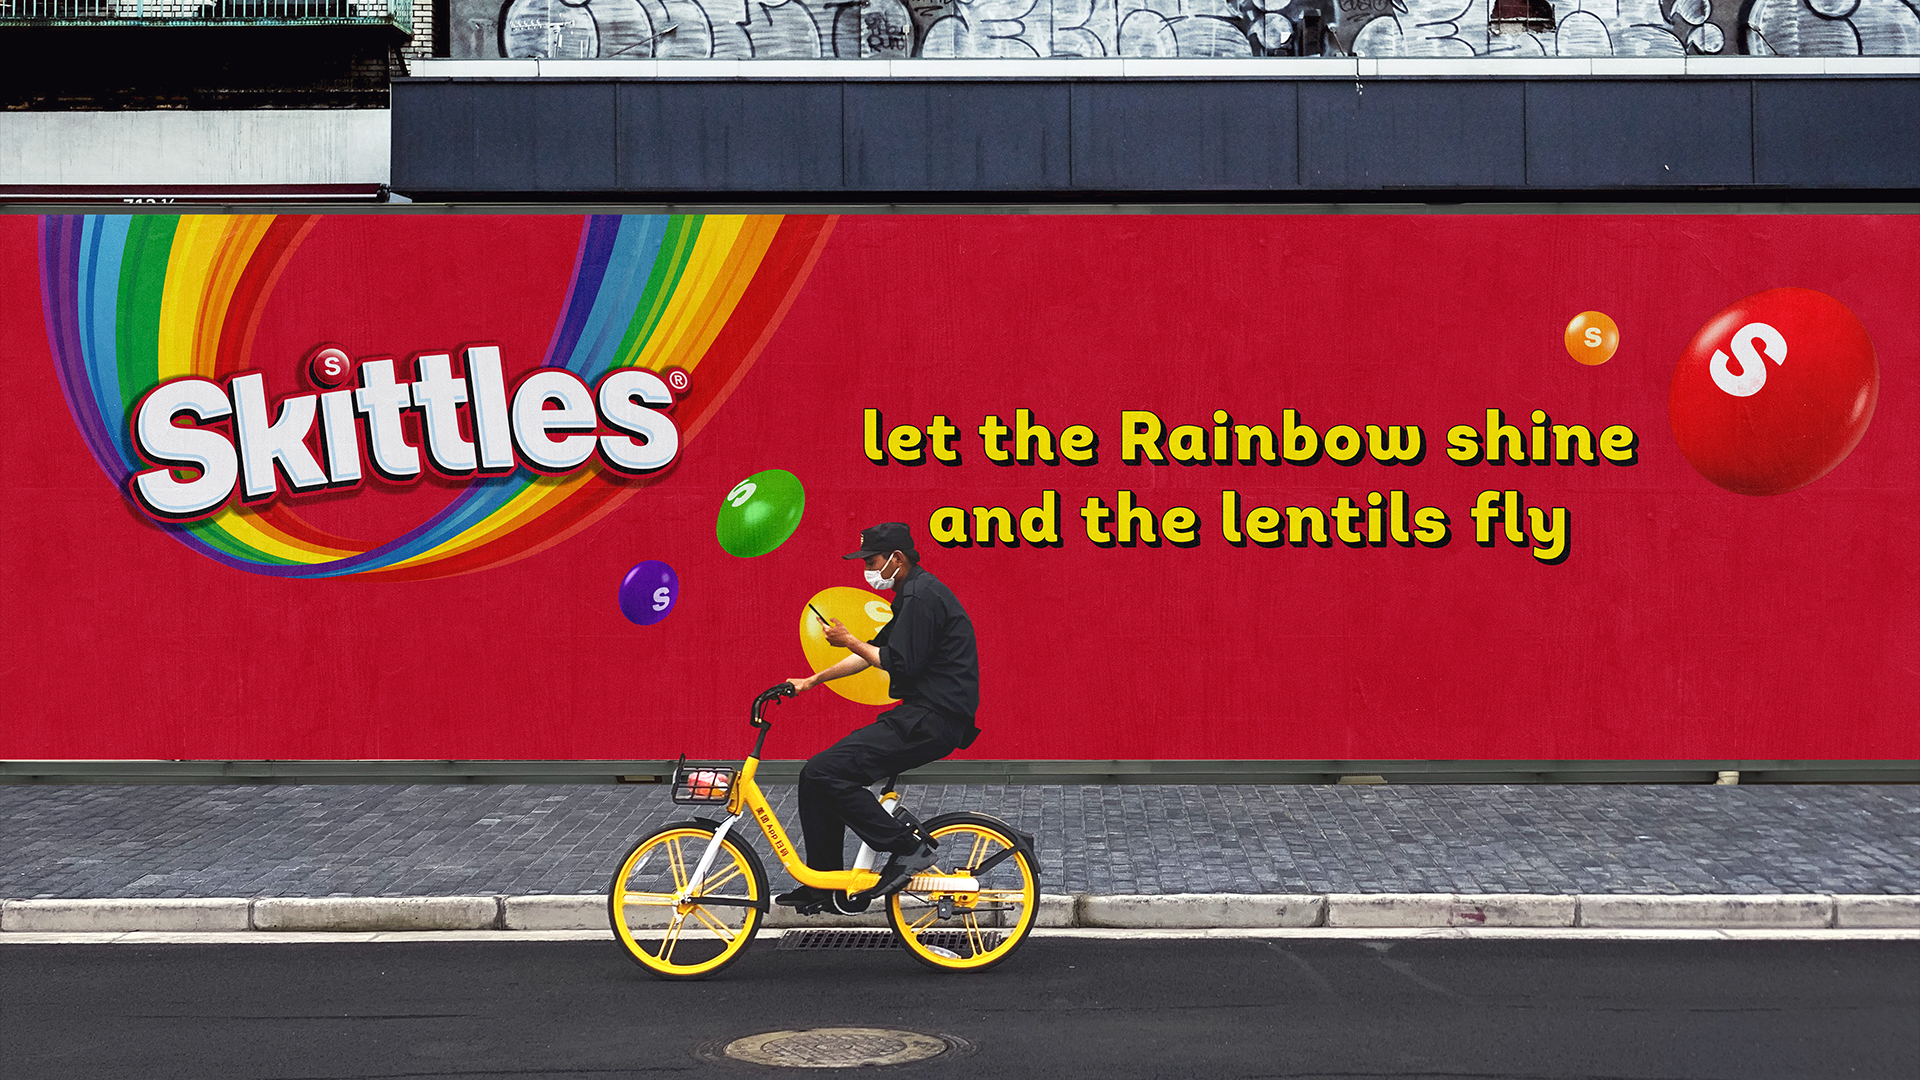 Skittles rebrand